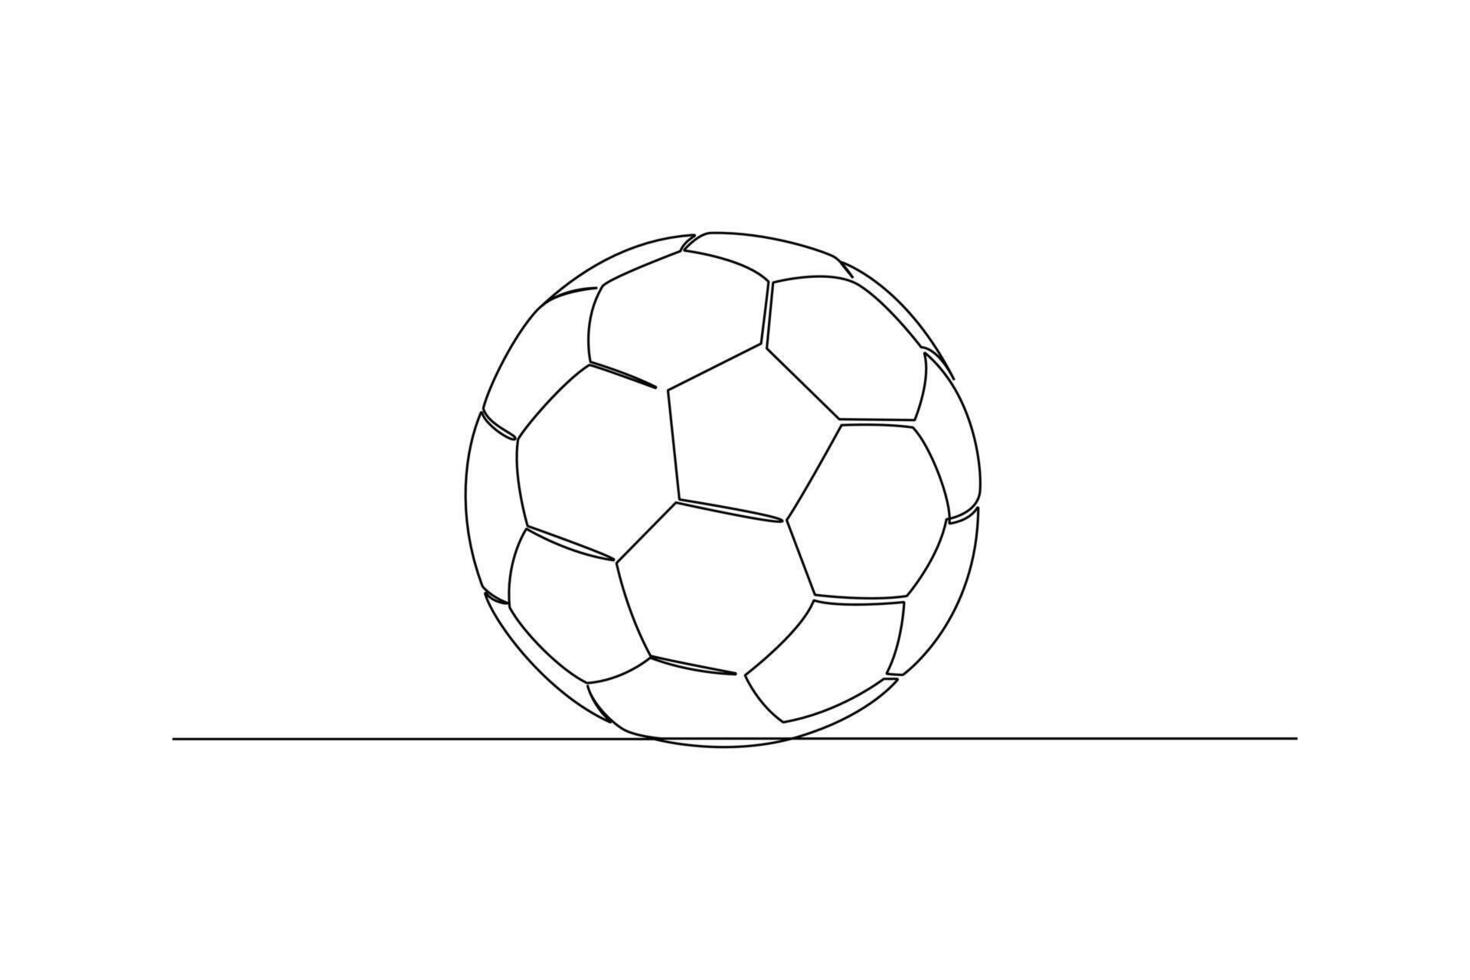 uno continuo línea dibujo de Deportes concepto. garabatear vector ilustración en sencillo lineal estilo.